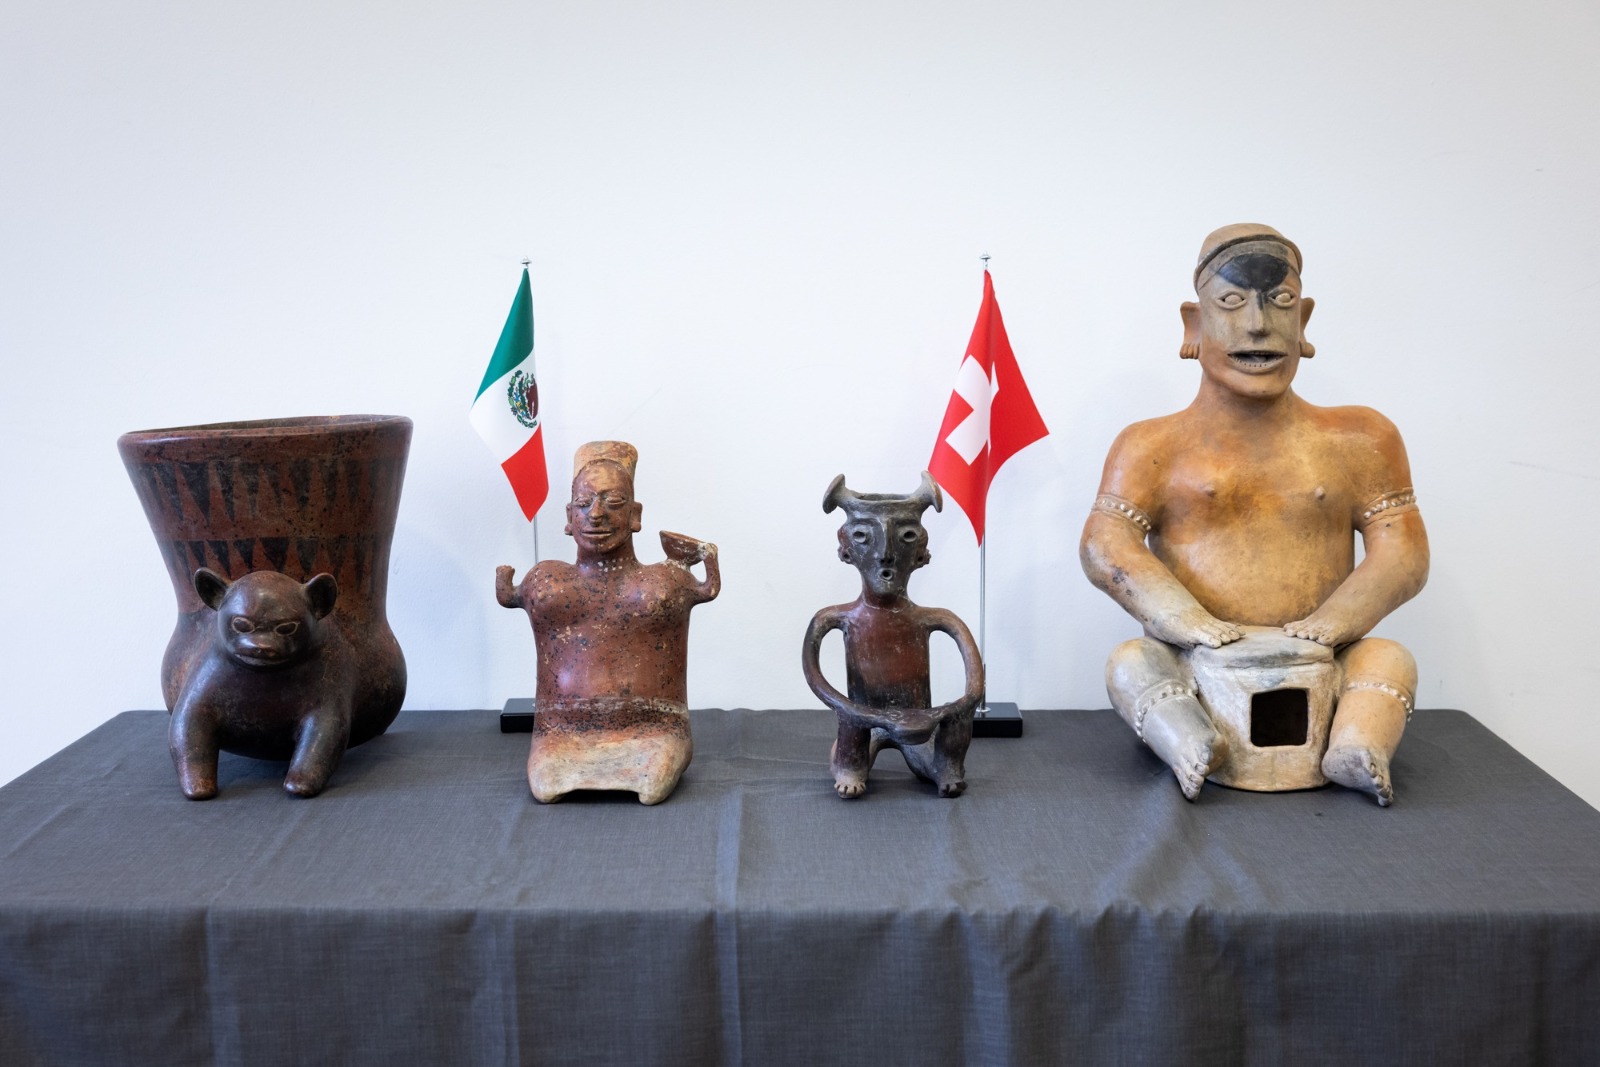 Suiza entrega 24 piezas arqueológicas a México